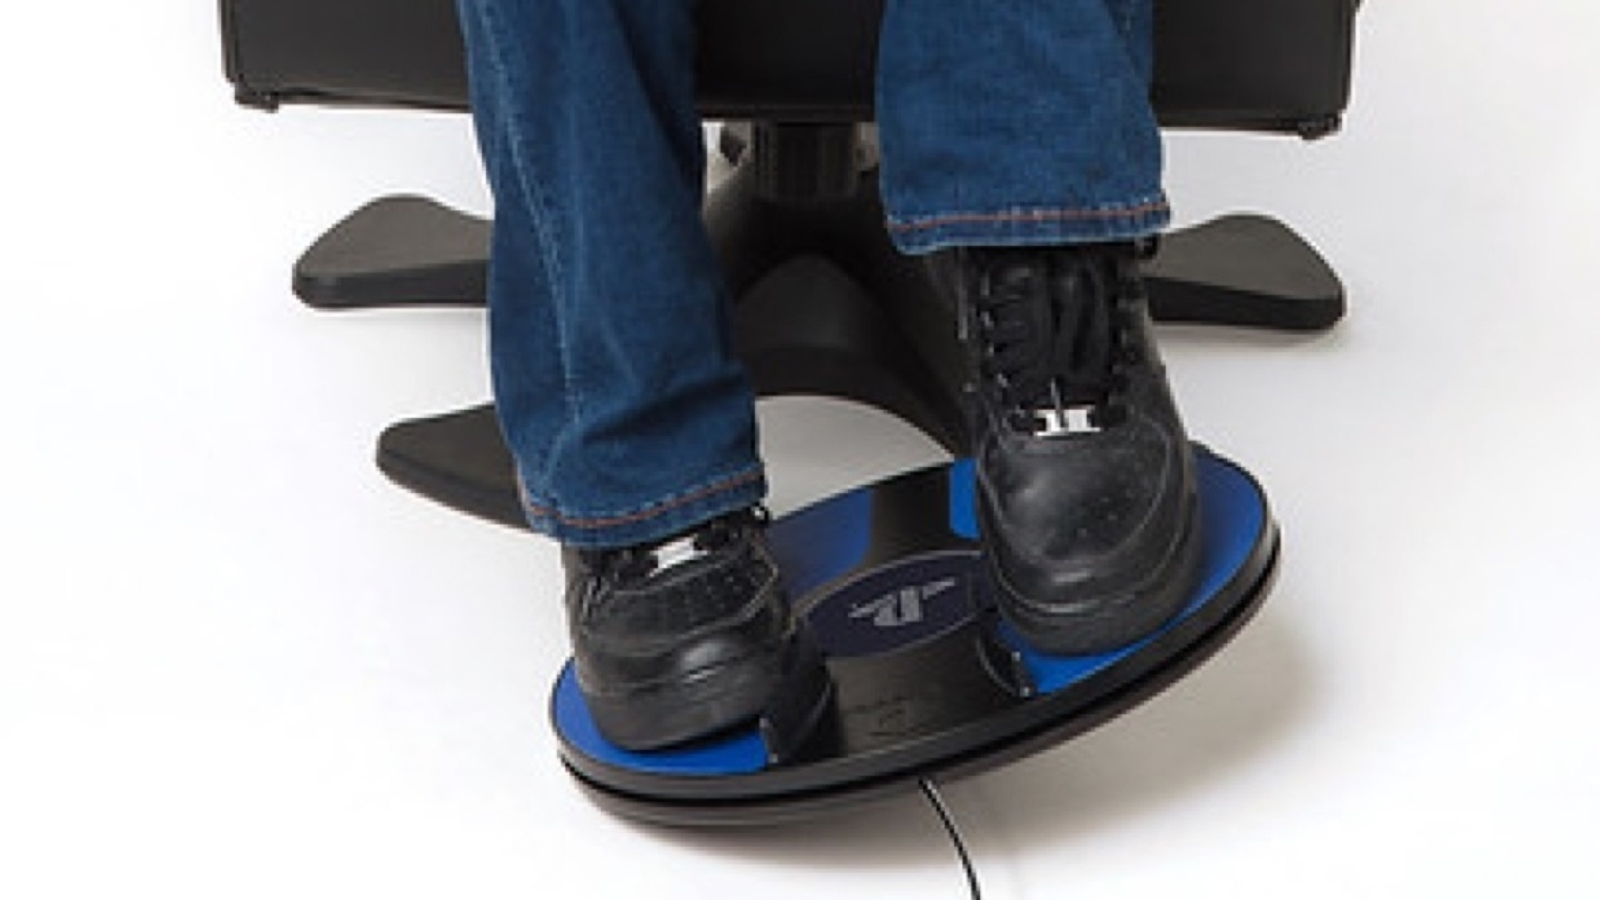 Sony details 3dRudder foot-based motion controller for PSVR, in June | Eurogamer.net